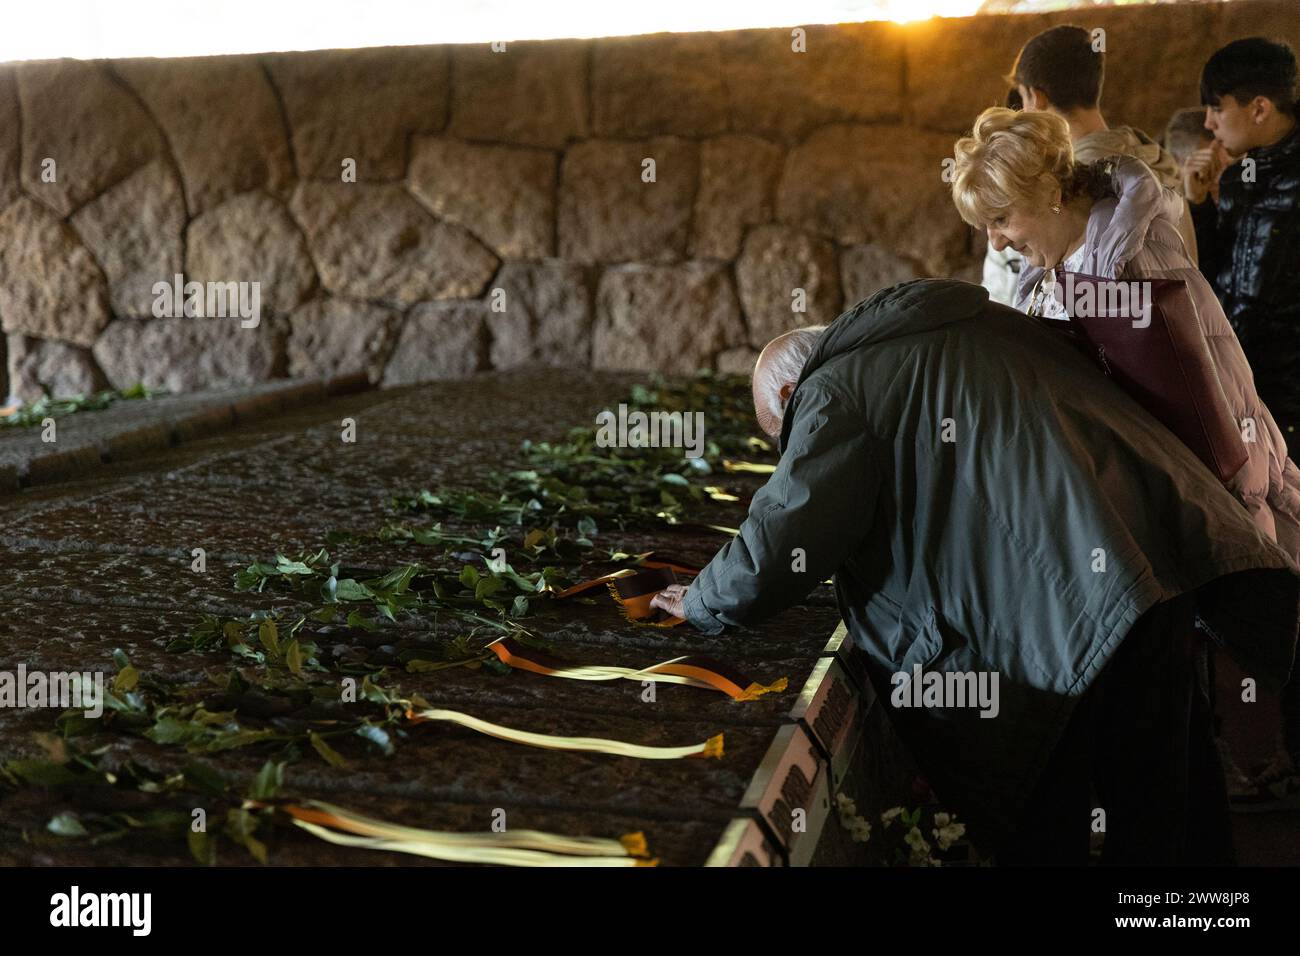 La gente lascia fiori sulla tomba di uno dei morti durante il massacro di fosse Ardeatine a Roma, avvenuto il 24 marzo 1944 (foto di Matteo Nardone/Pacific Press/Sipa USA) Foto Stock